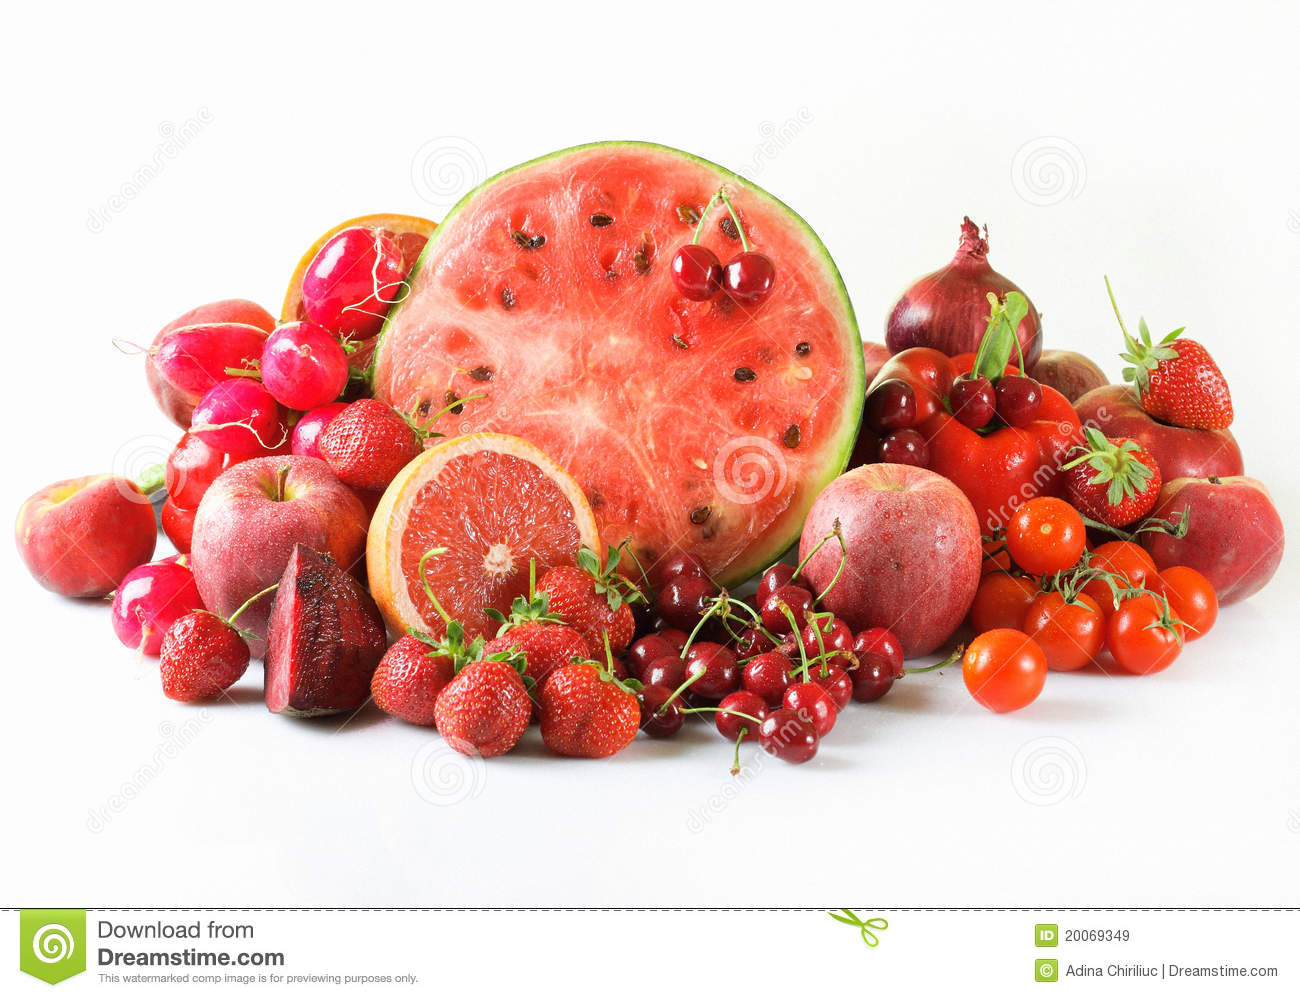 red-fruits-vegetables